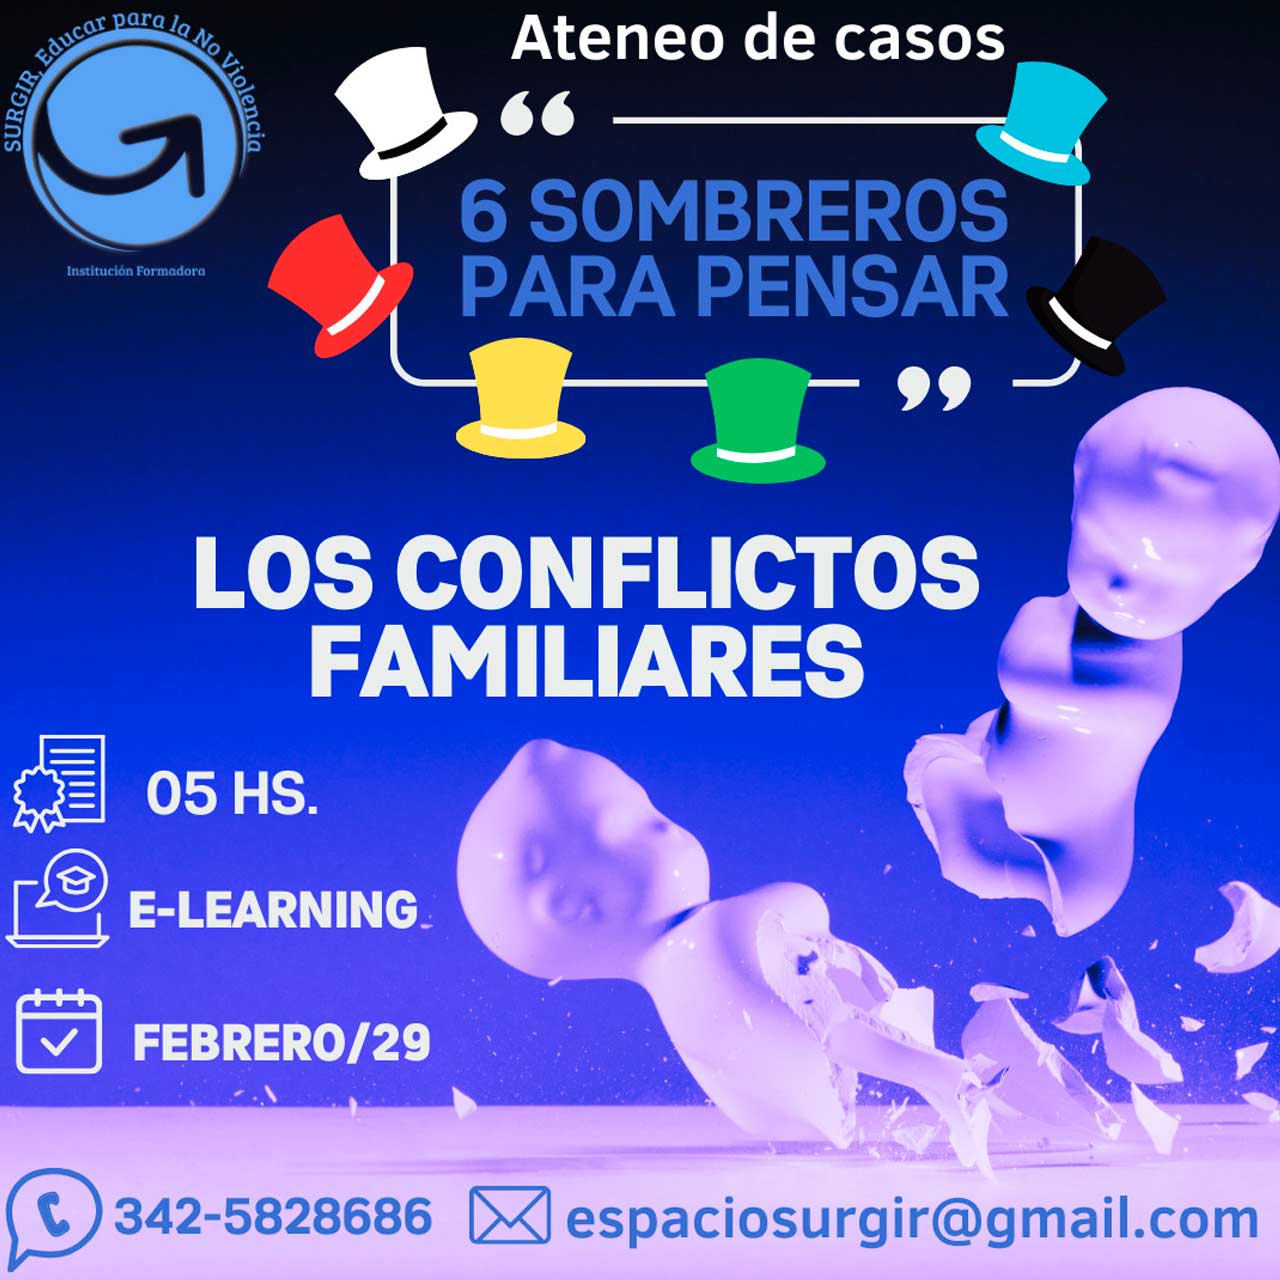 ATENEO DE CASOS “6 Sombreros para pensar… los conflictos familiares”